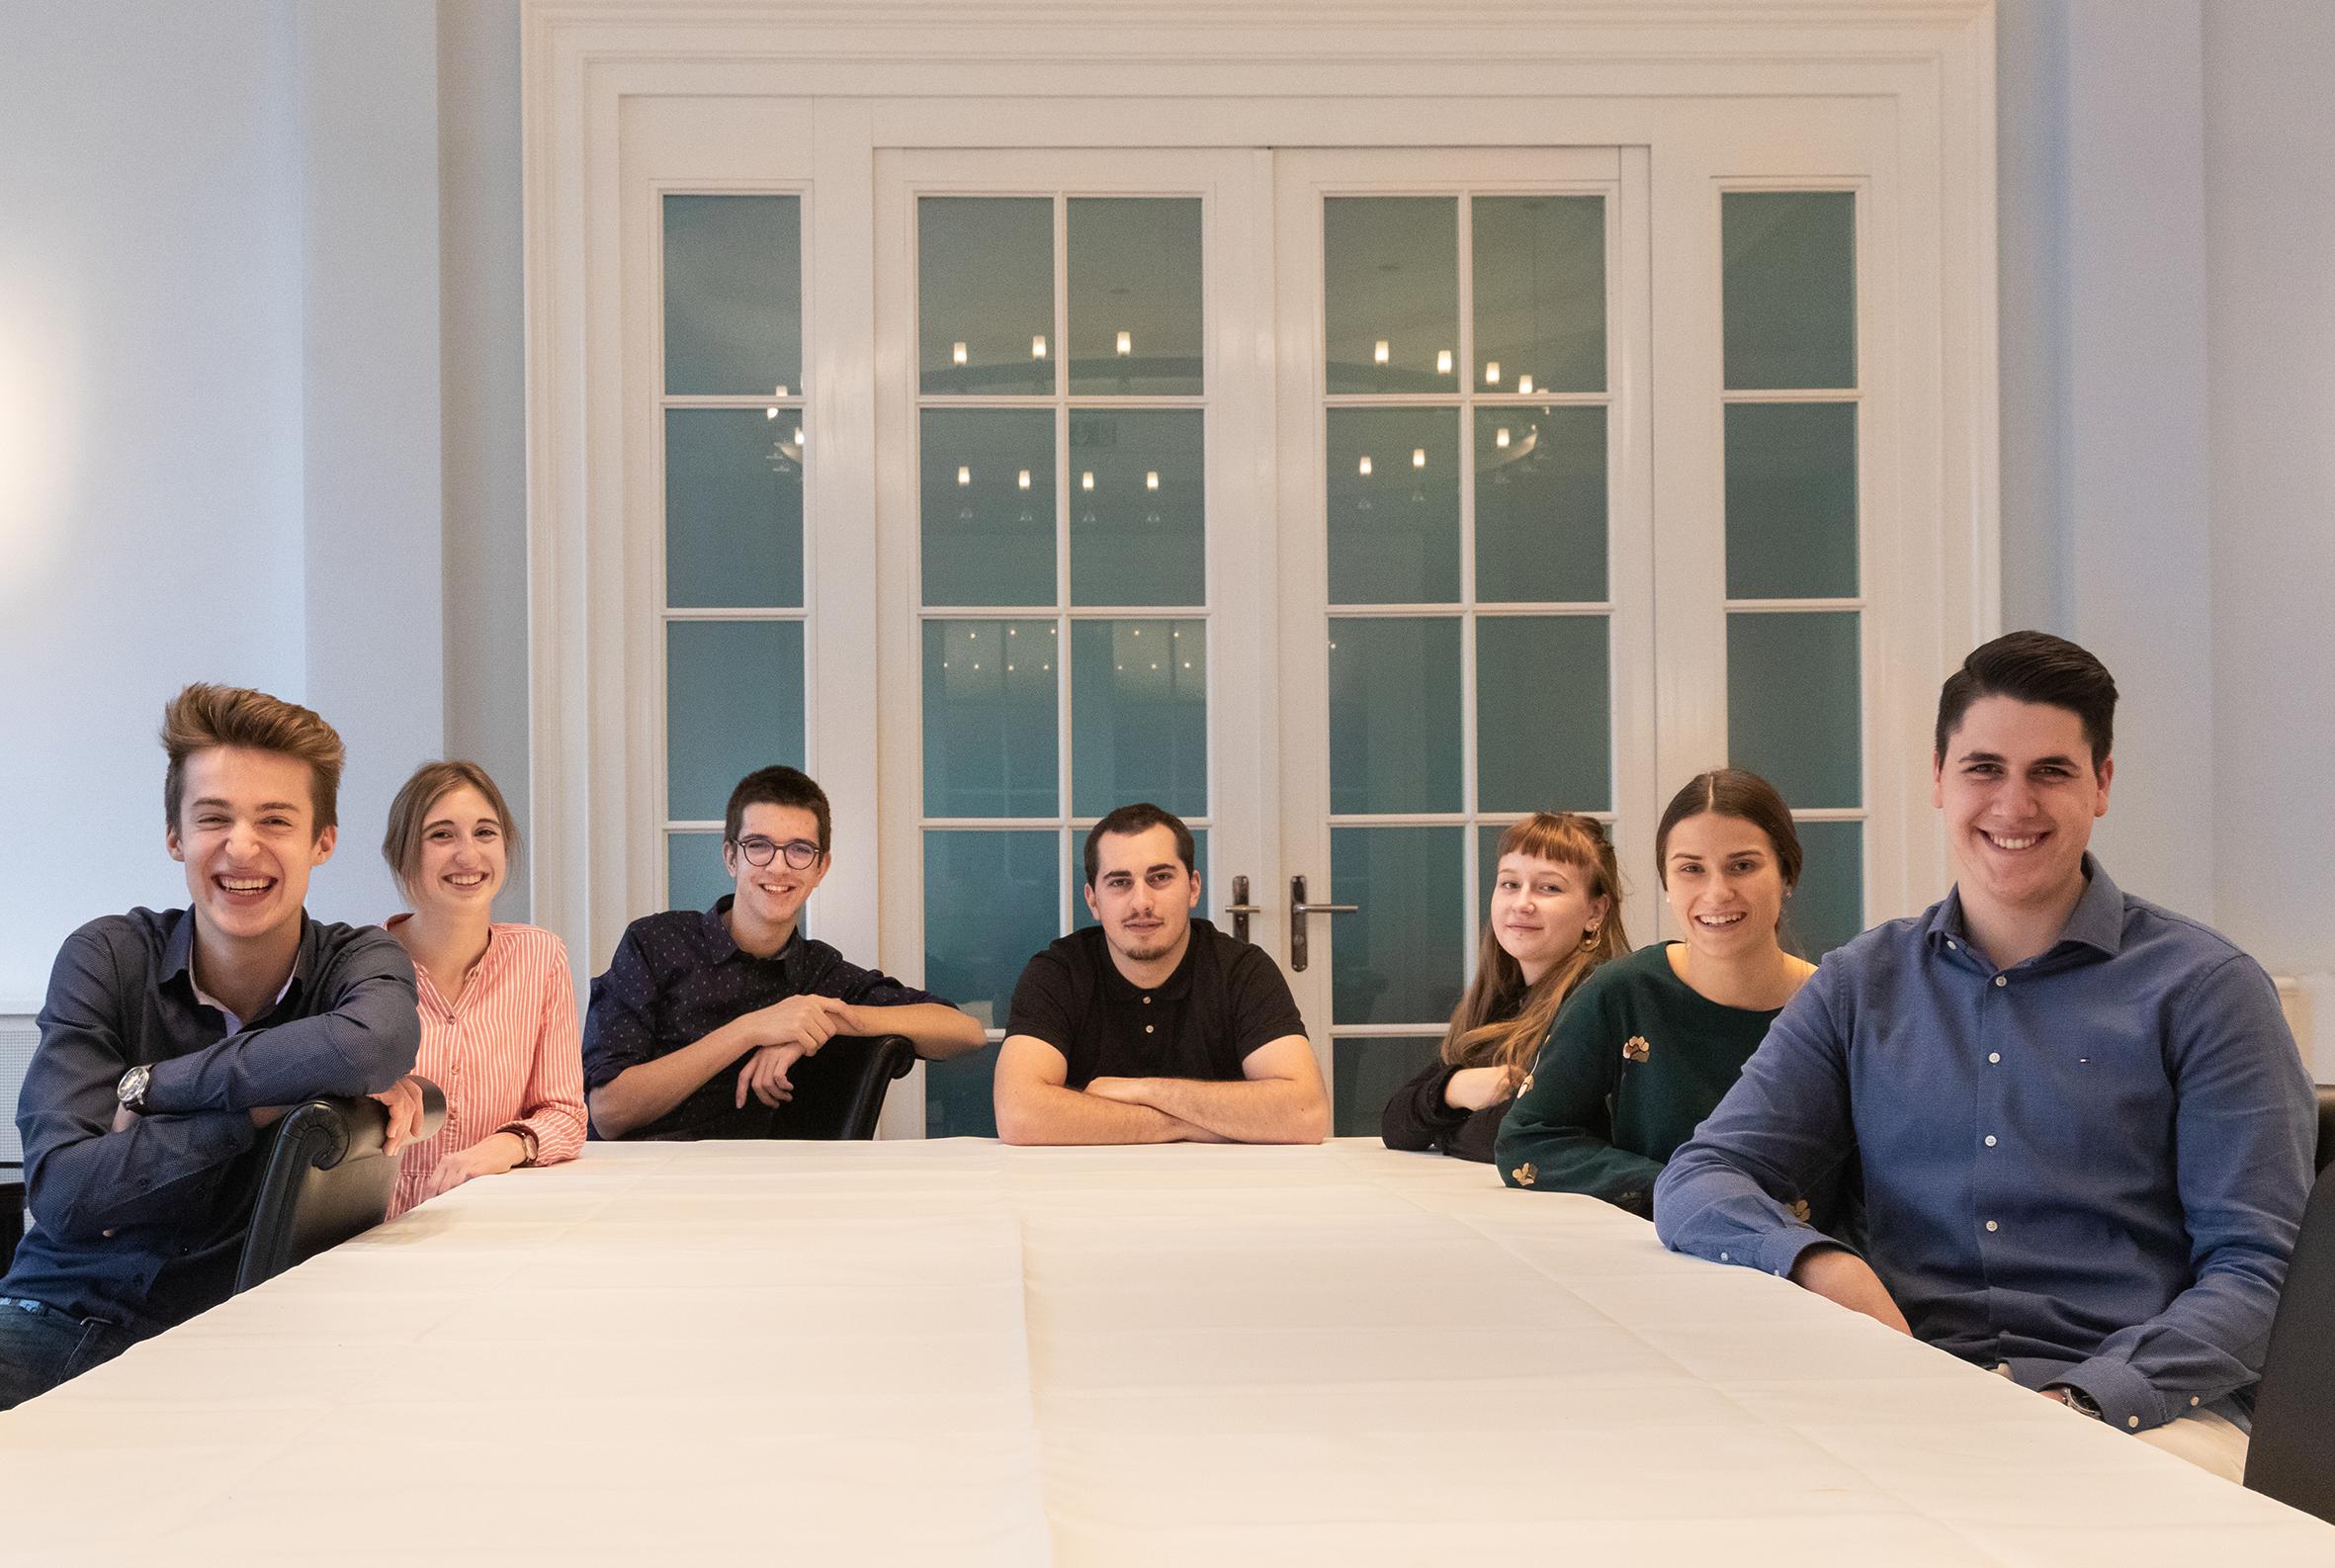 Les sept étudiants qui ont réalisé la photographie officielle du Conseil fédéral pour 2019. [admin.ch]